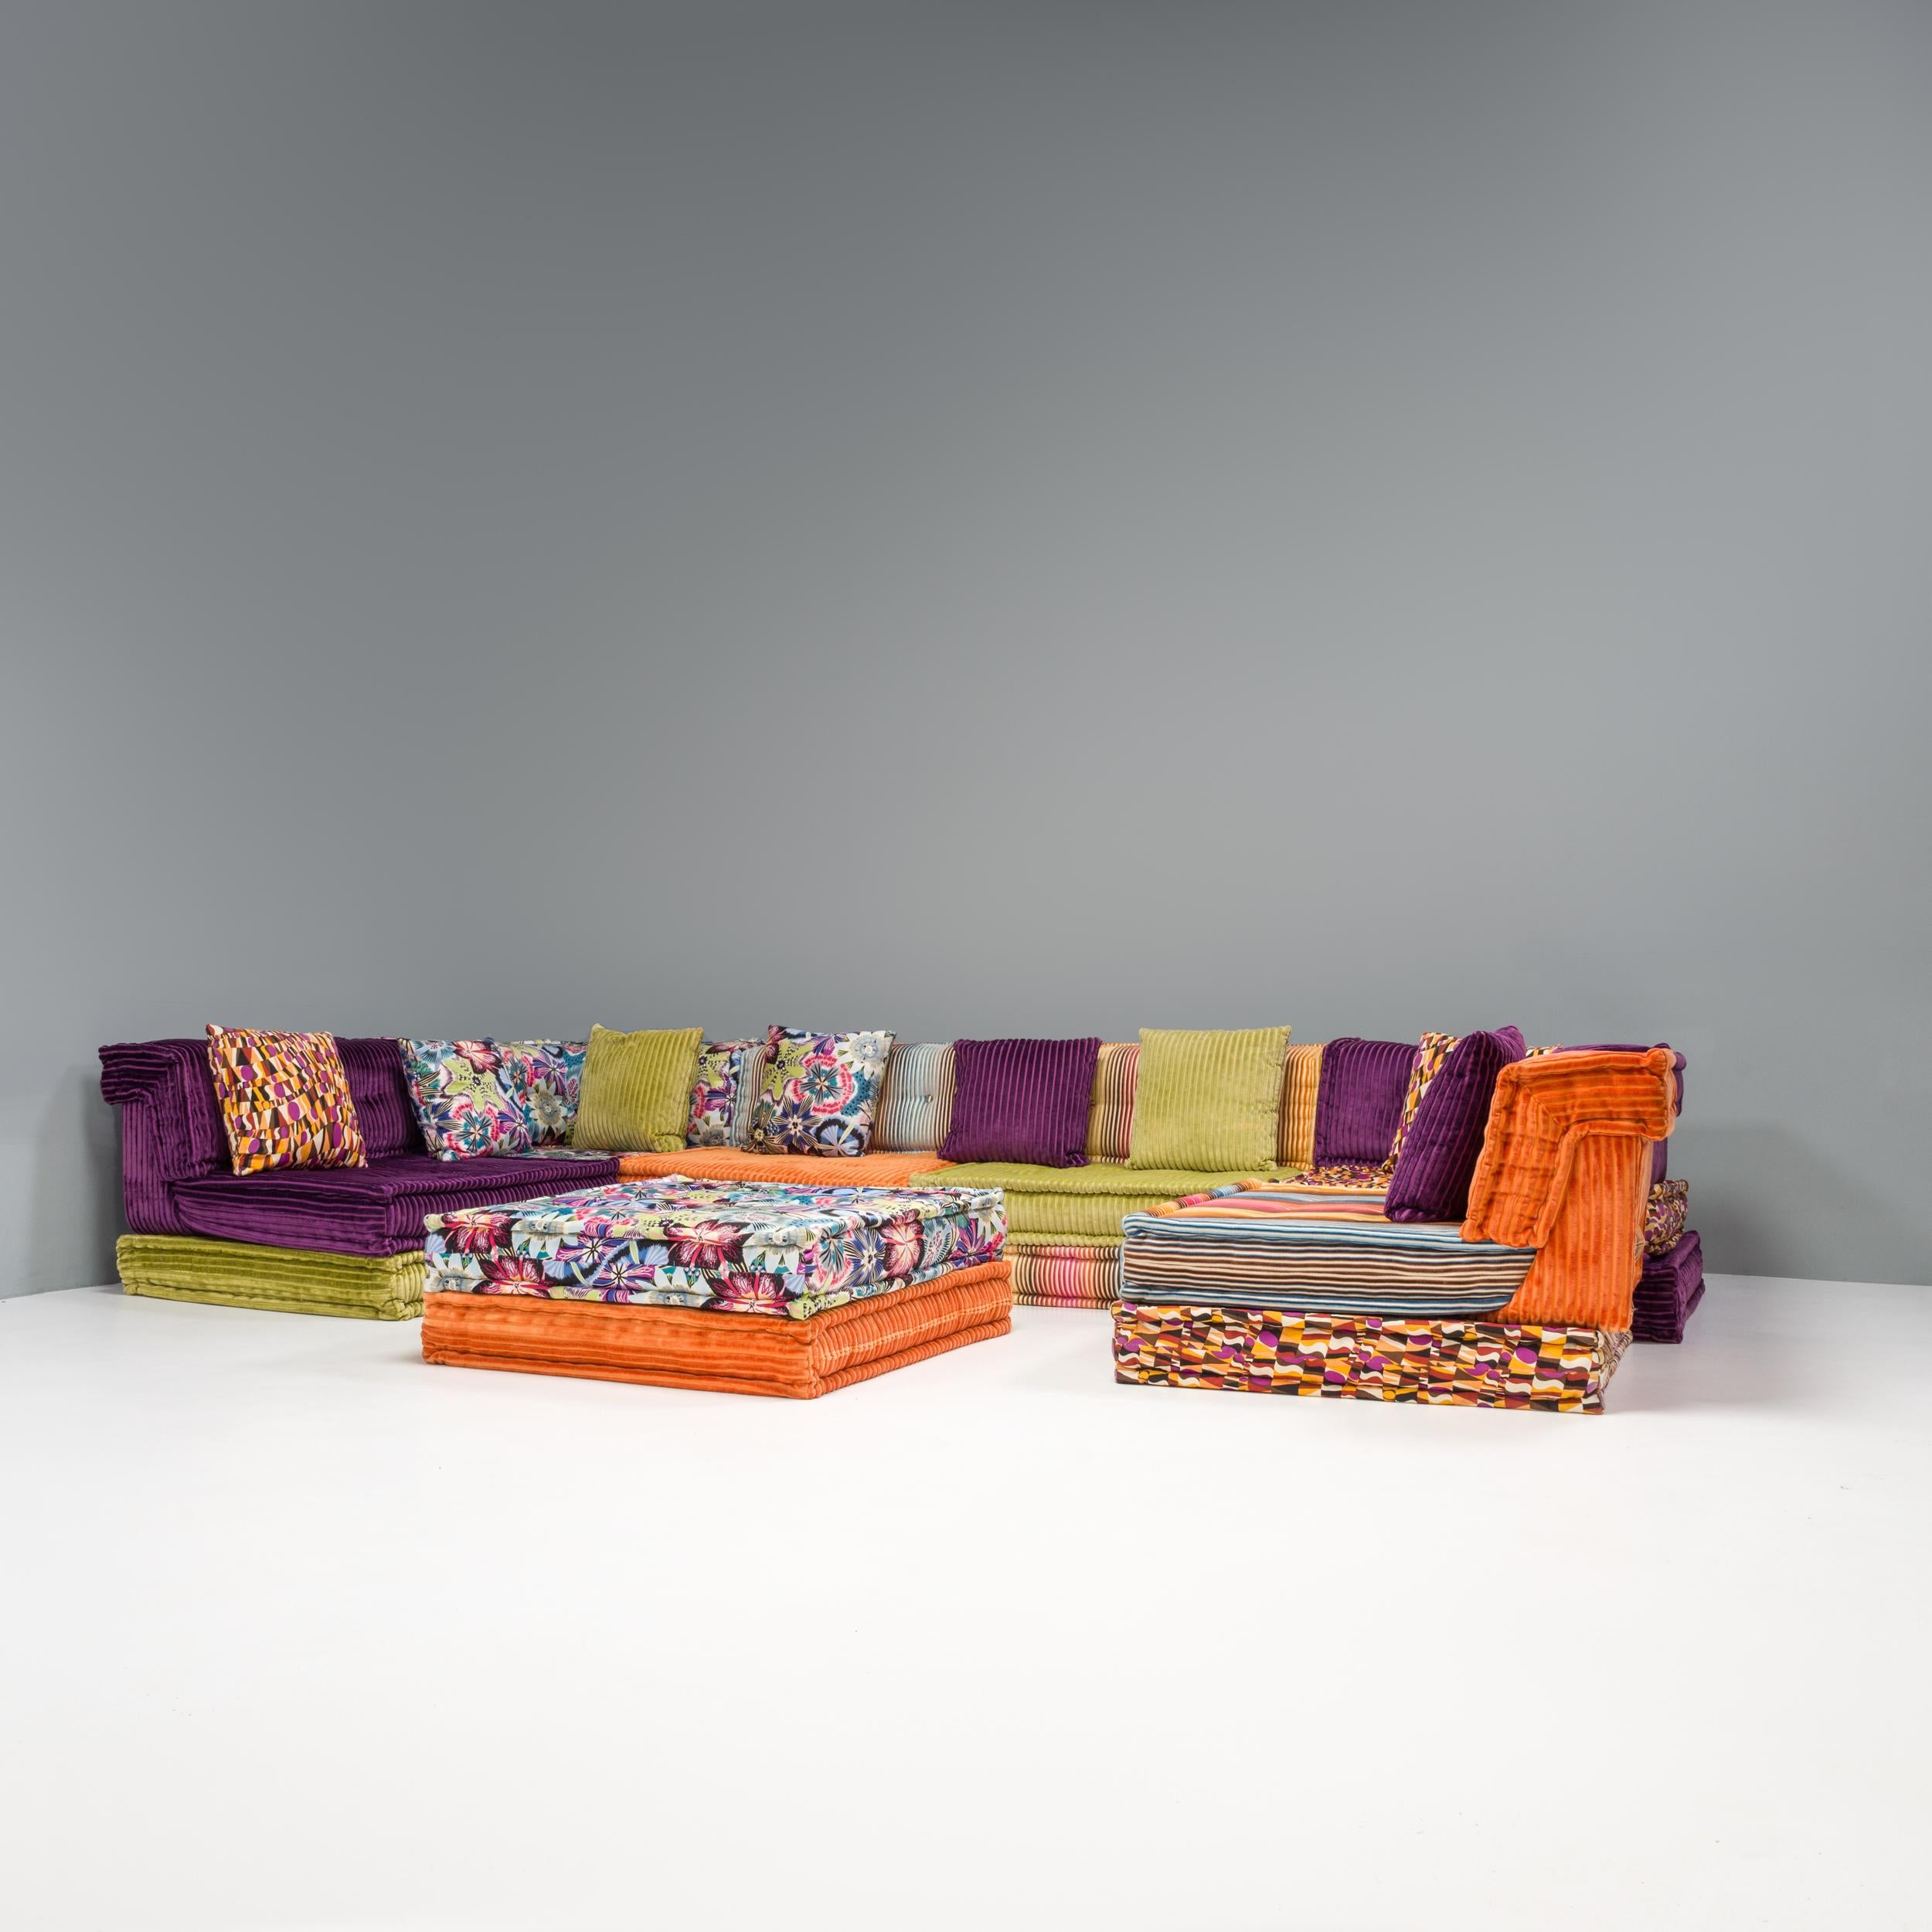 Das 1971 von Hans Hopfer für Roche Bobois entworfene Mah-Jong-Sofa ist zu einem Designklassiker geworden.

Seit seiner ursprünglichen Konzeption hat Roche Bobois mit einer Vielzahl von Designern zusammengearbeitet, um das Sofa zu beziehen und das